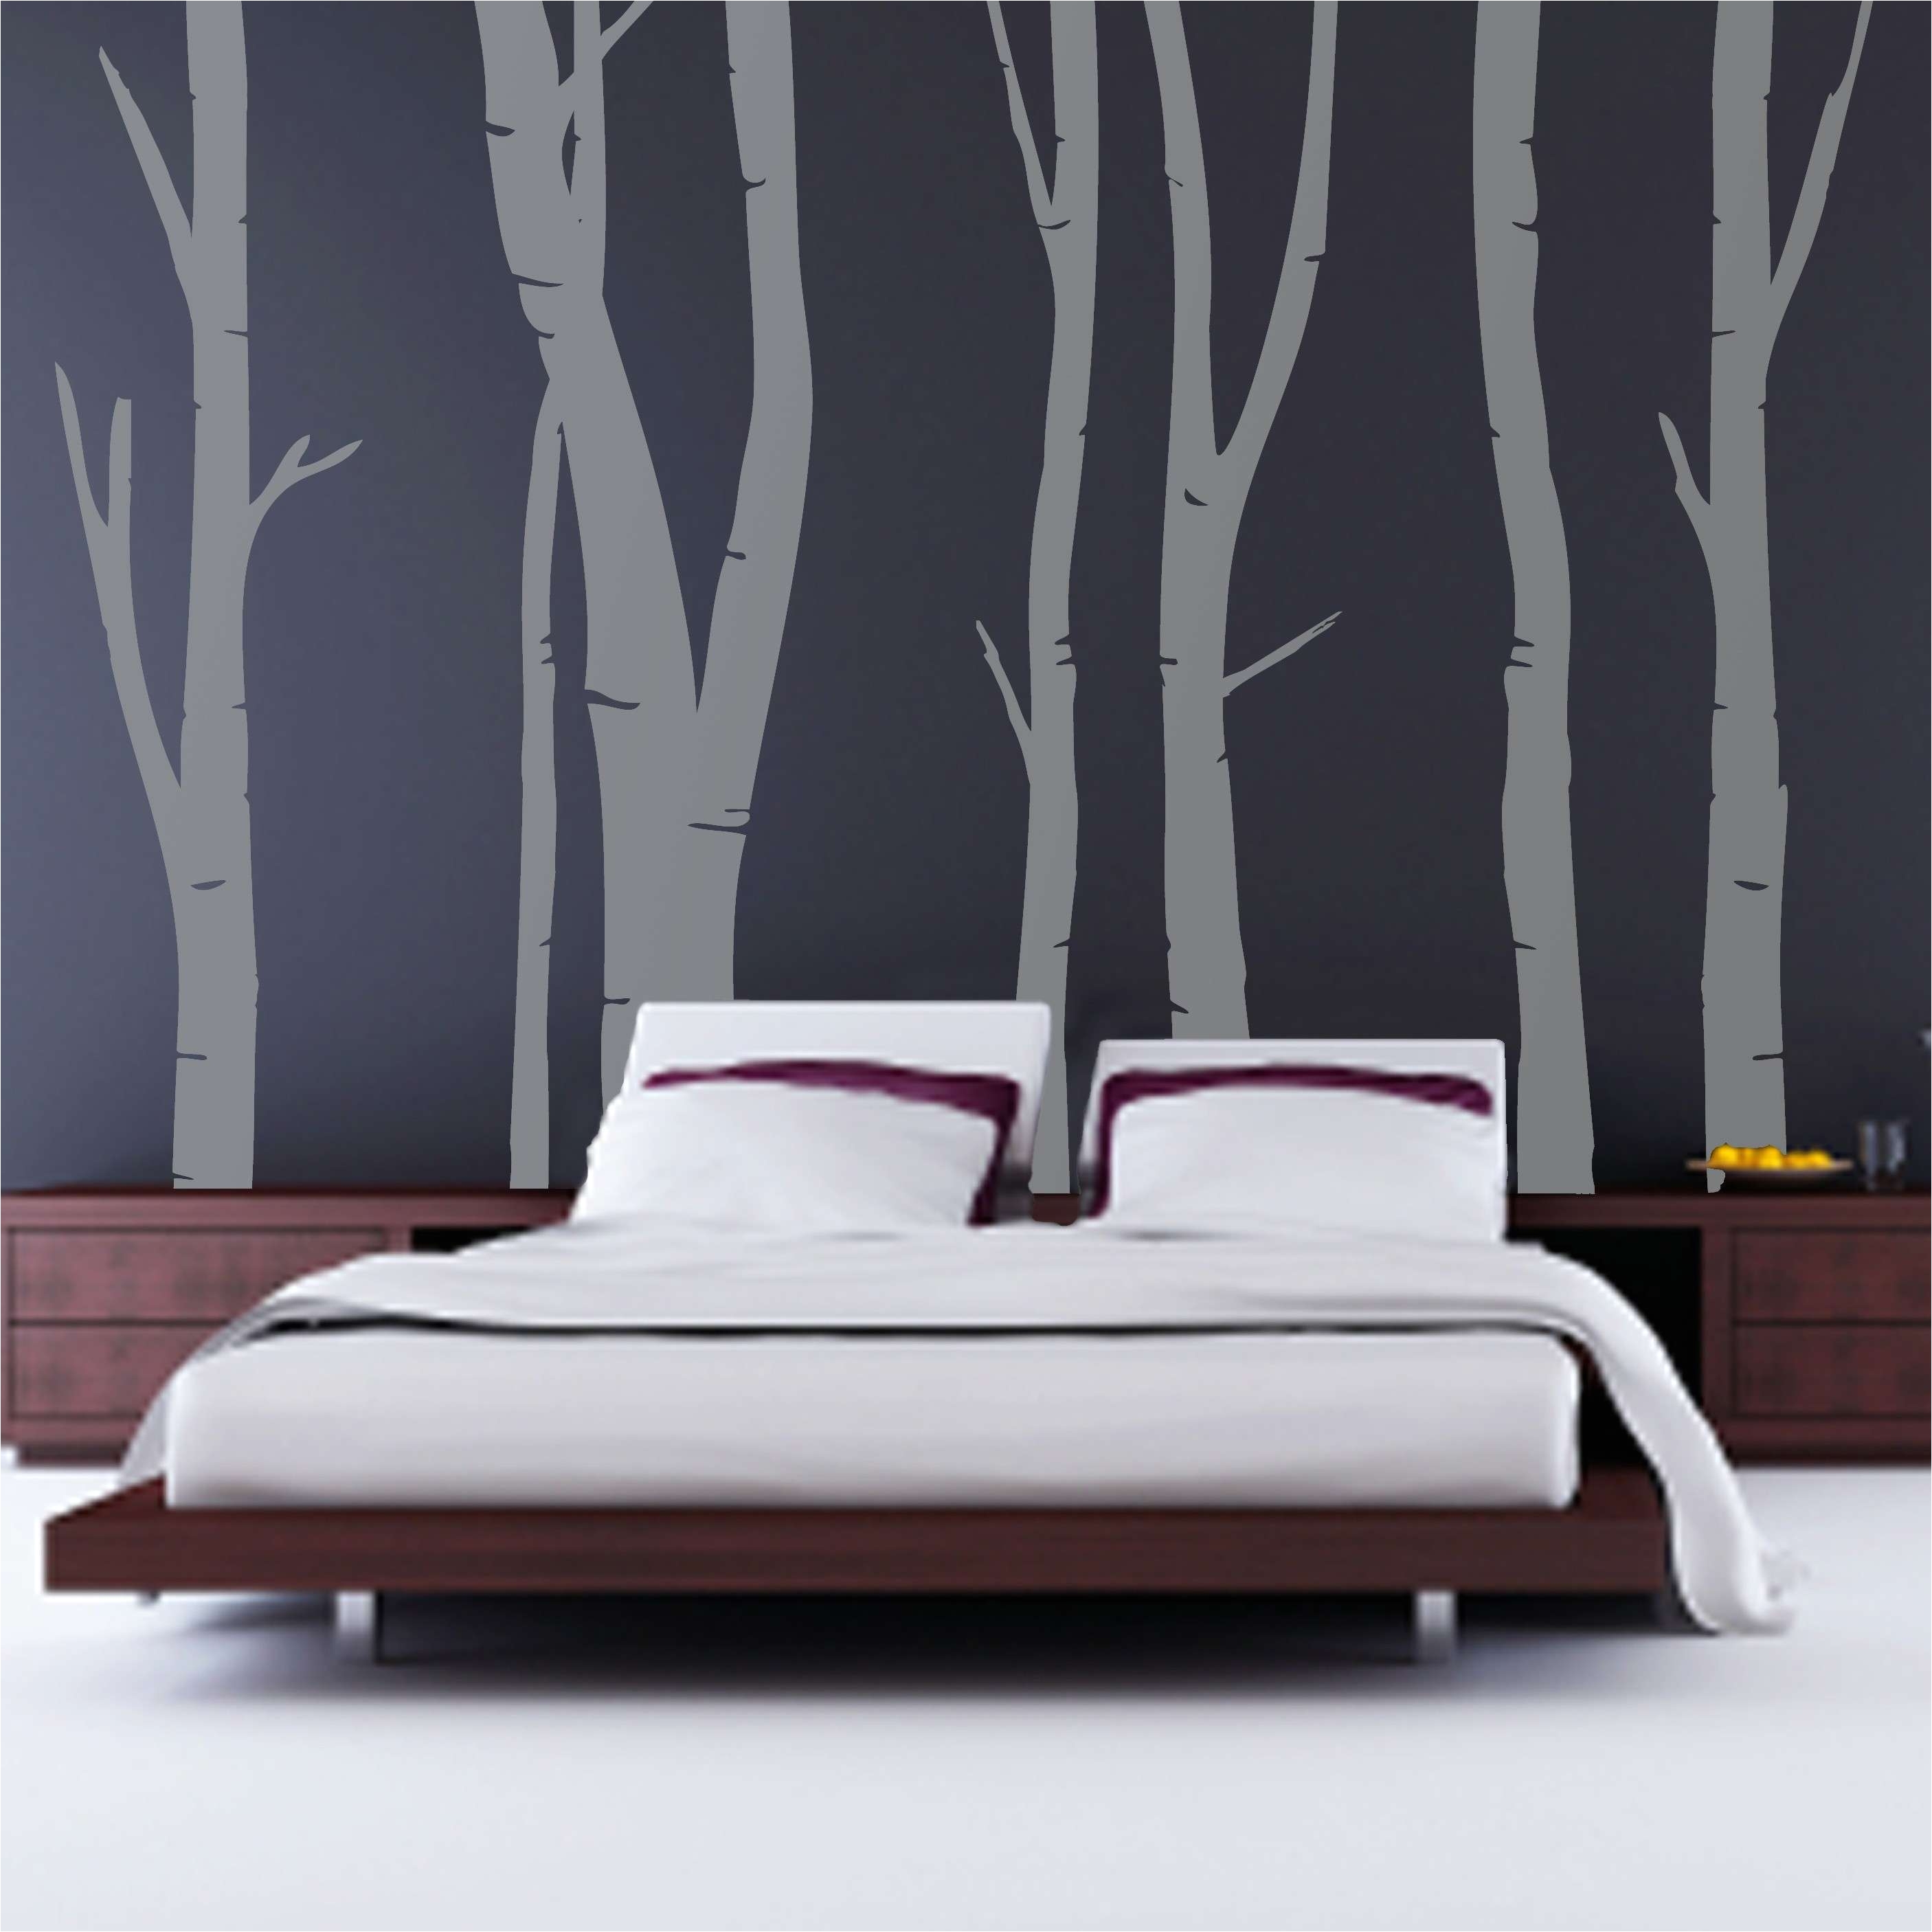 diy bedroom decor elegant wall decals for bedroom unique 1 kirkland wall decor home design 0d